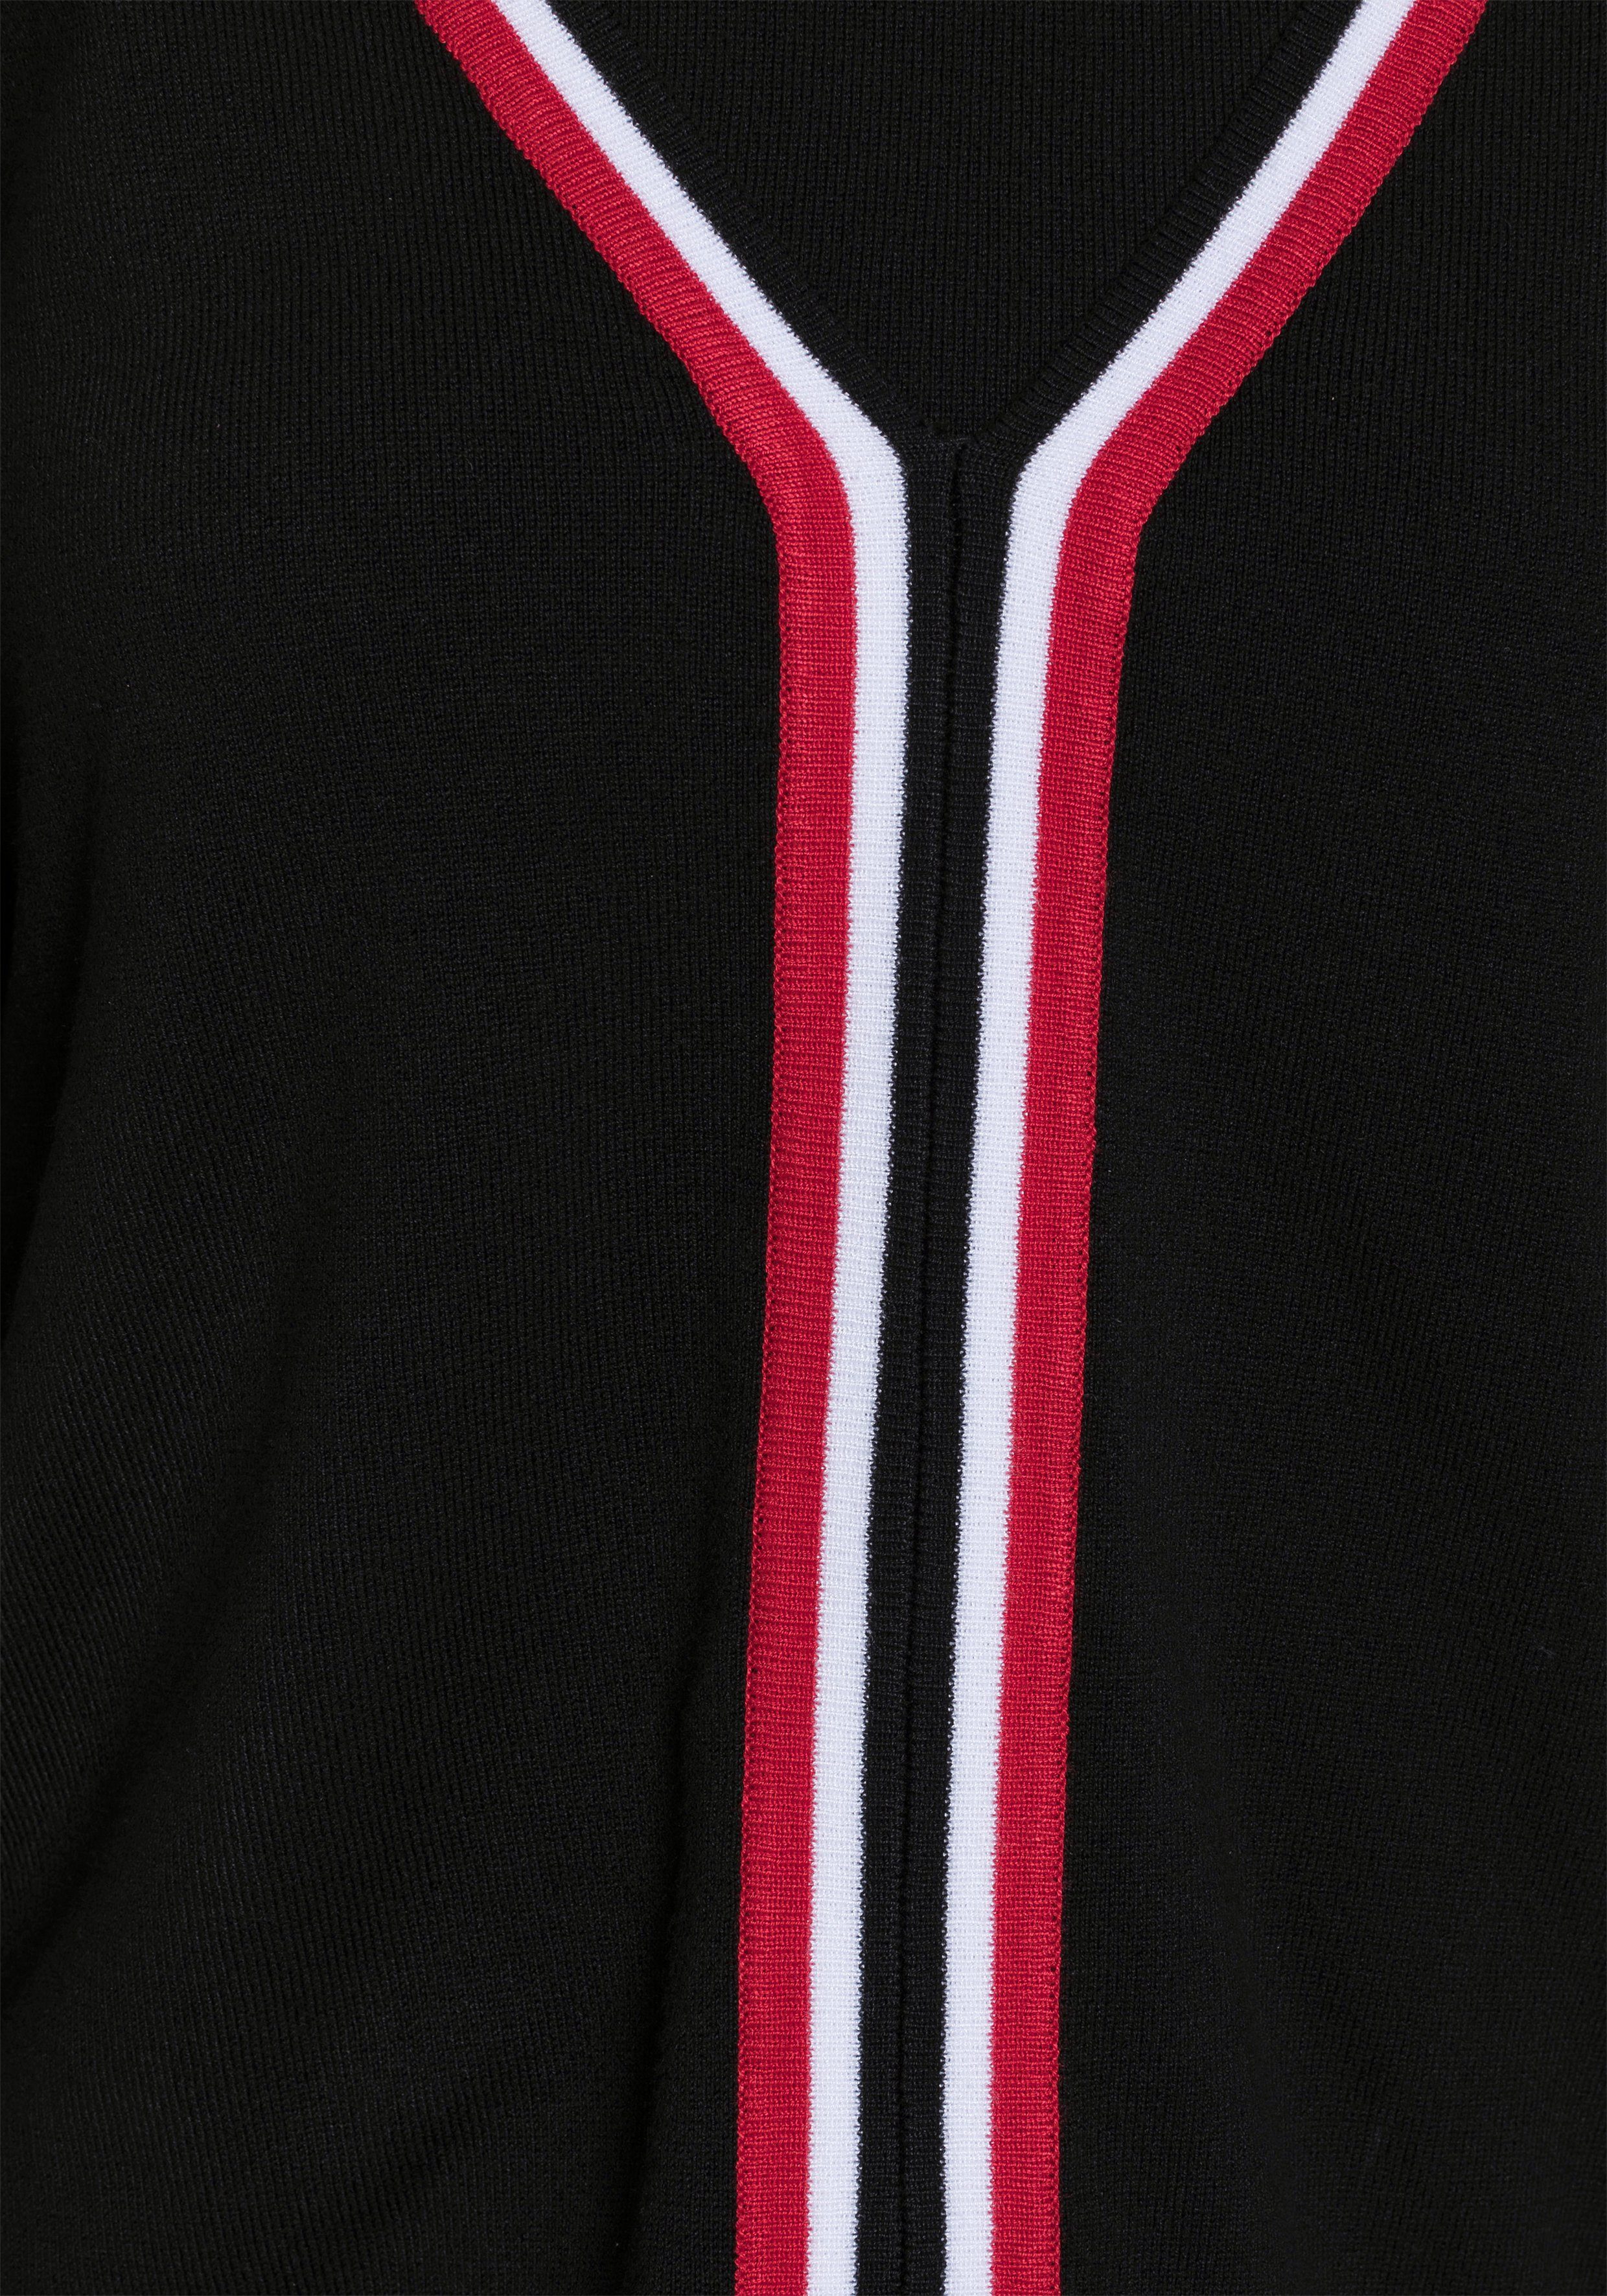 AJC schwarz-rot Kleid und Pullover Strickkleid (Set)